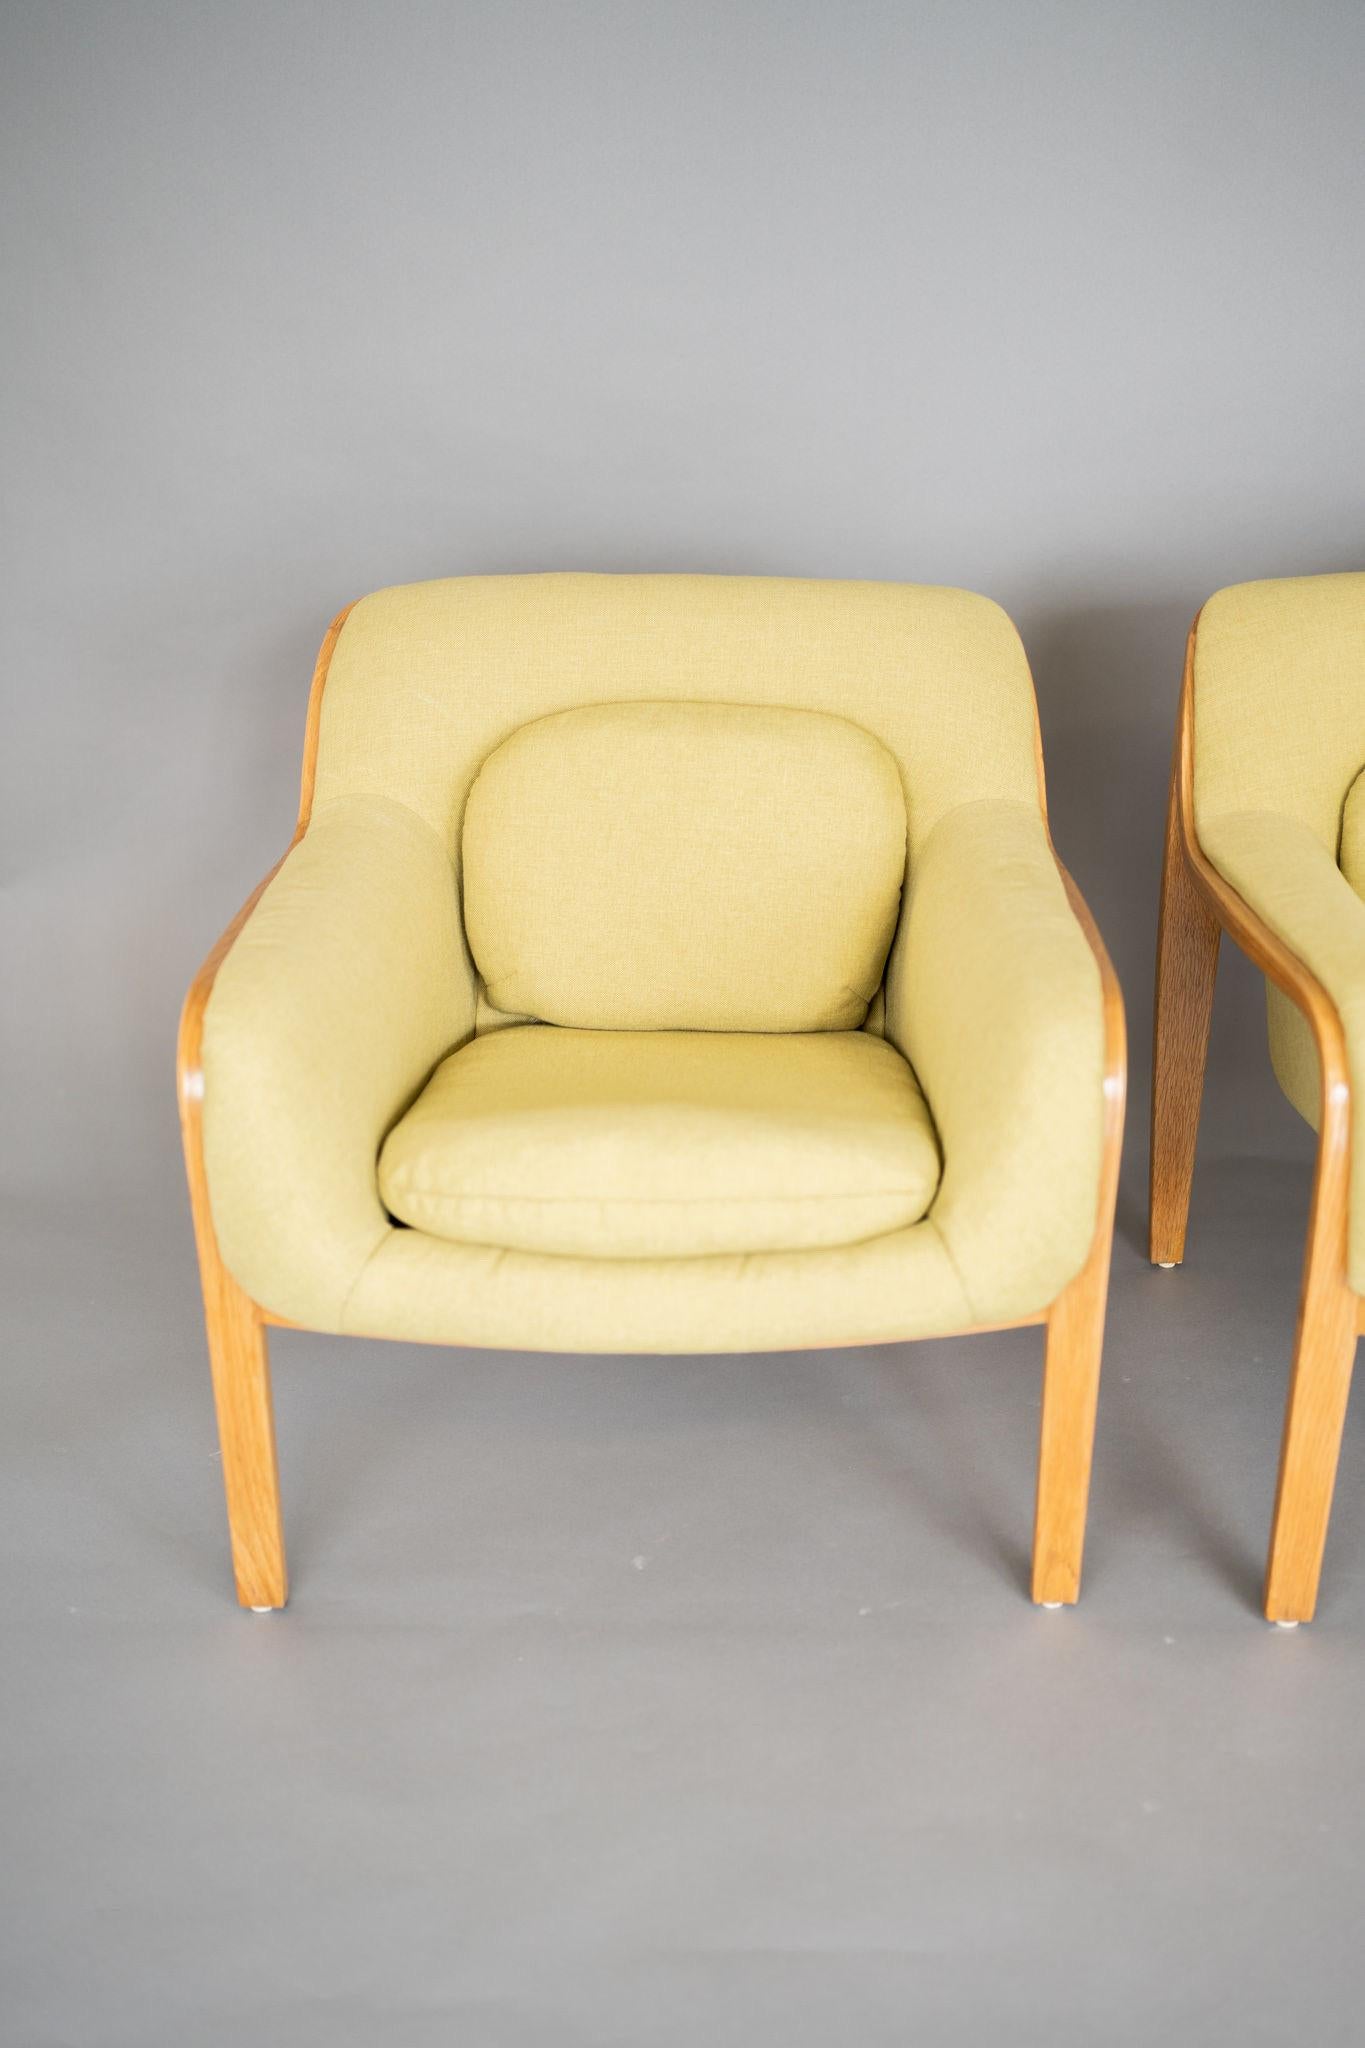 Bill Stephens Knoll vintage 1315 lounge chairs, high design and comfort est ce que Stephens pensait, un design sobre et élégant que seul Knoll pouvait comprendre le concept.